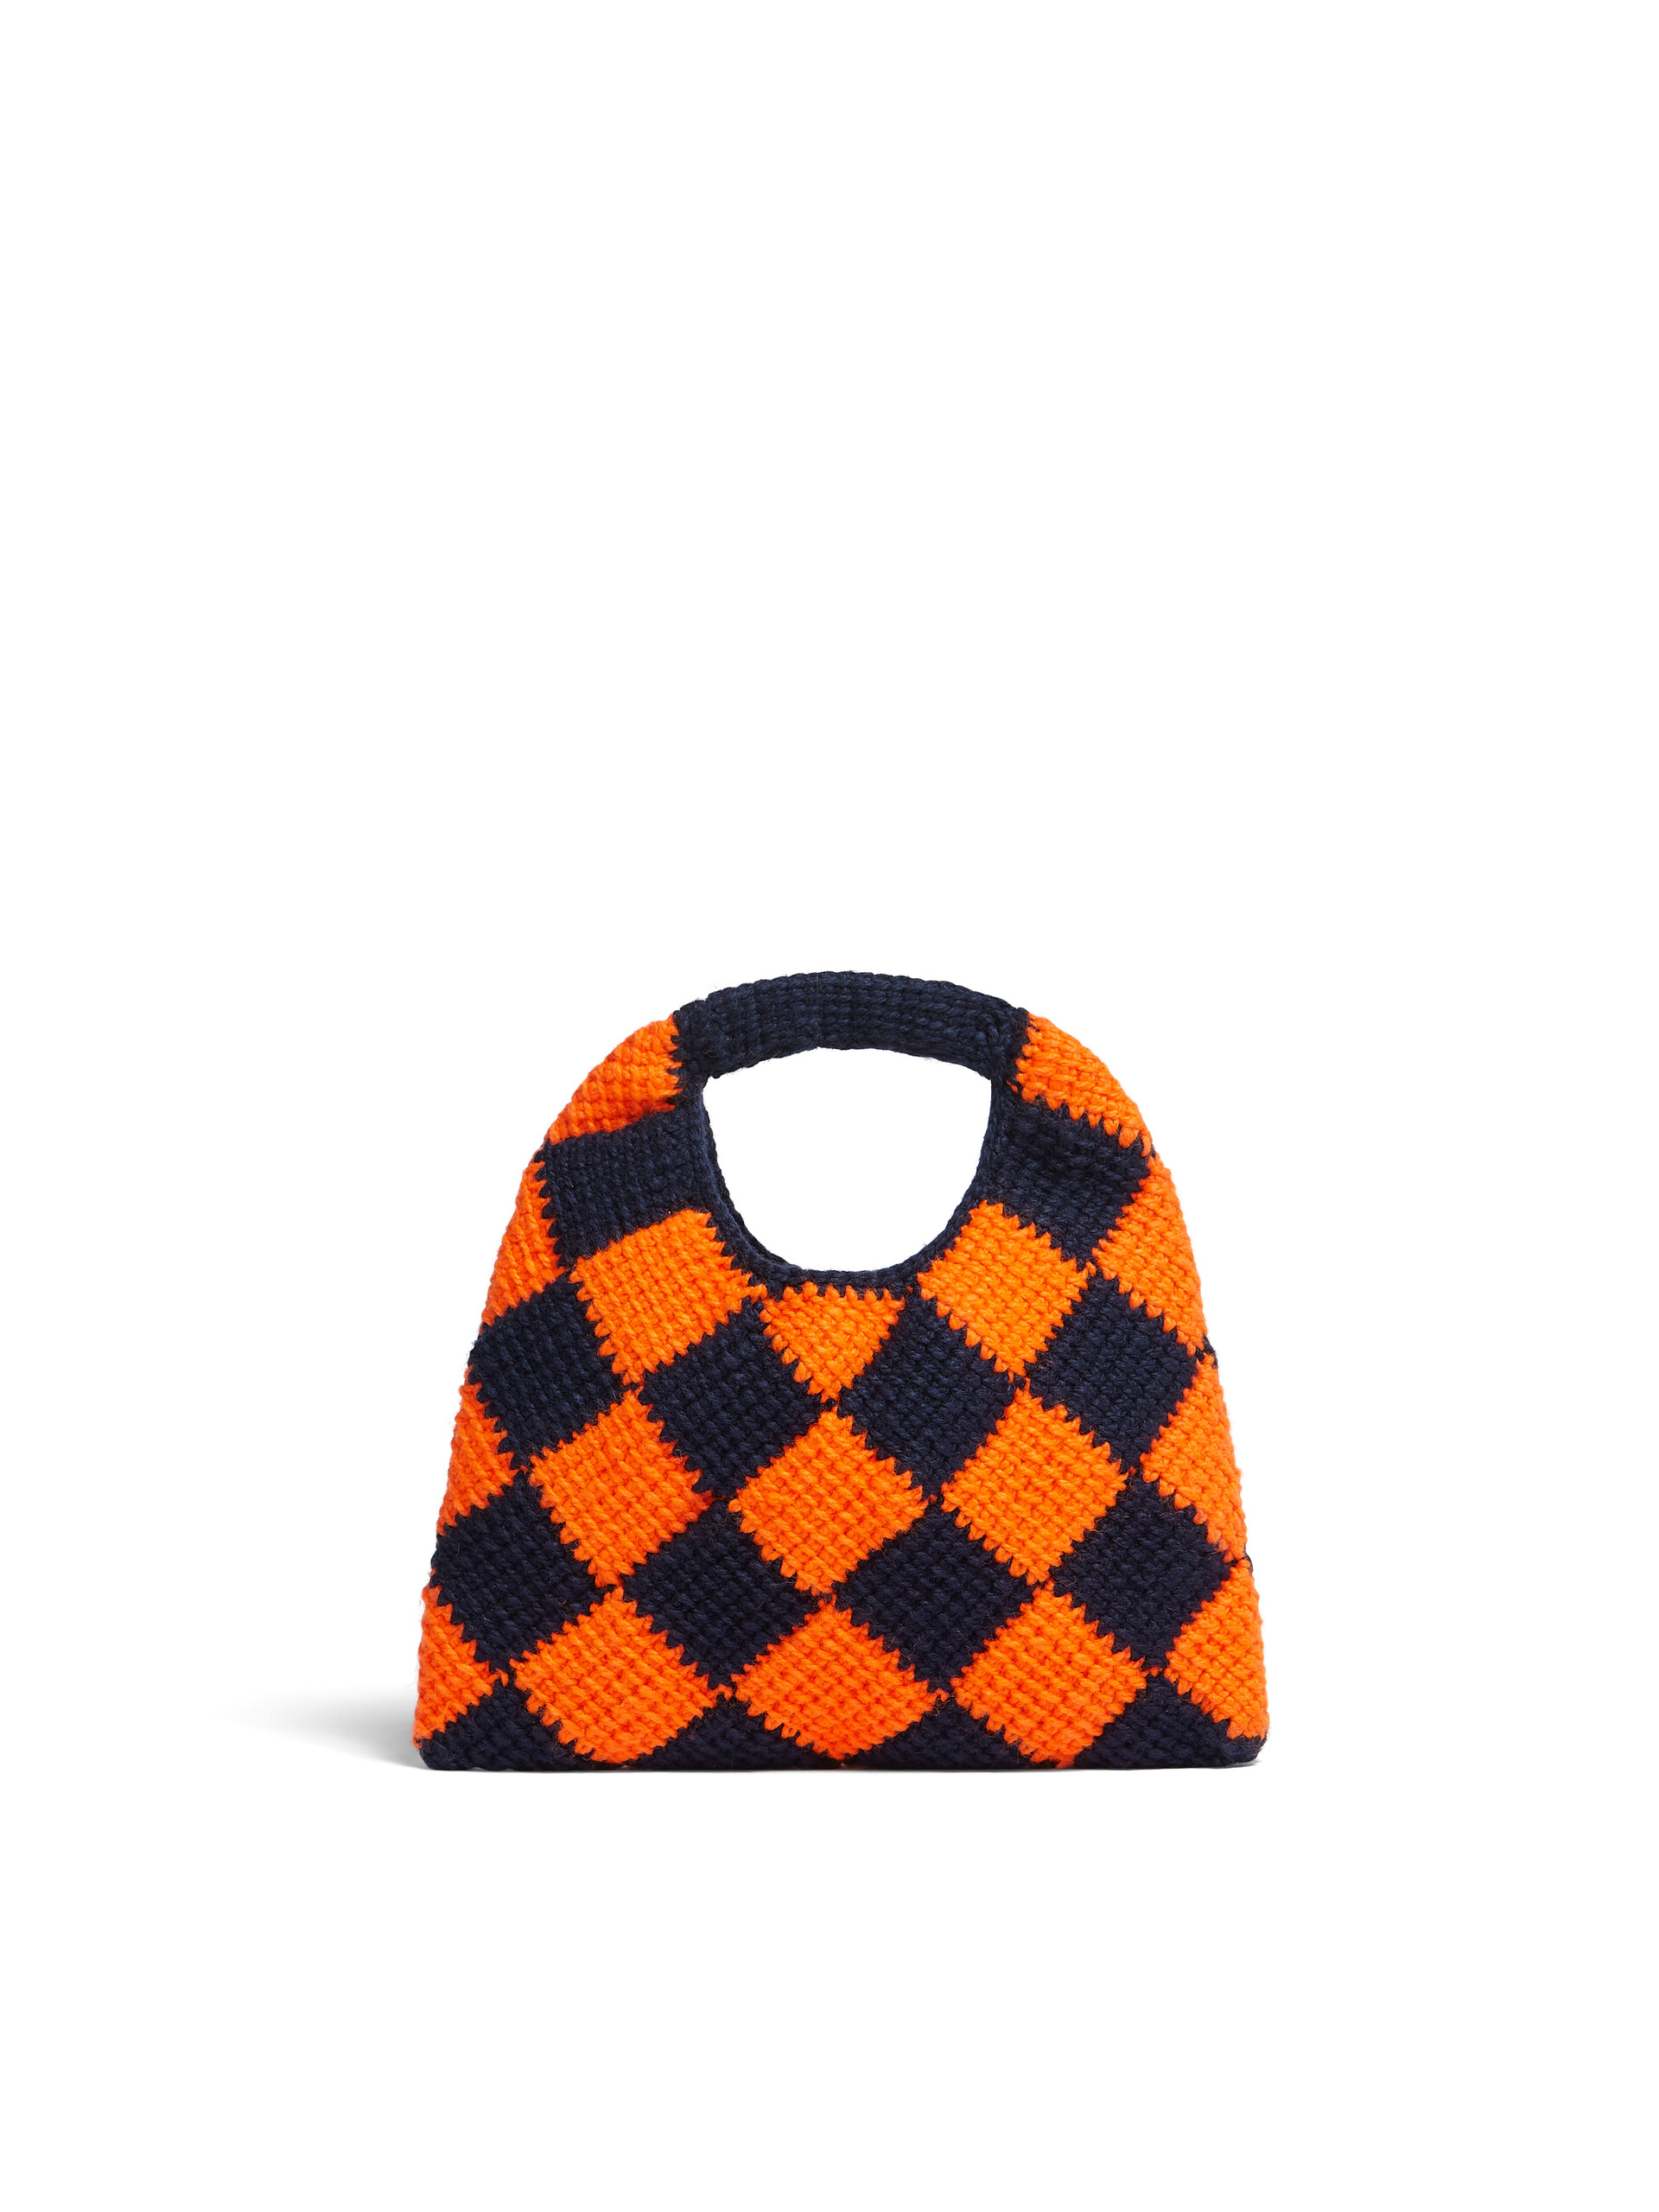 MARNI MARKET DIAMOND MINI bag in orange and blue tech wool - Bags - Image 3